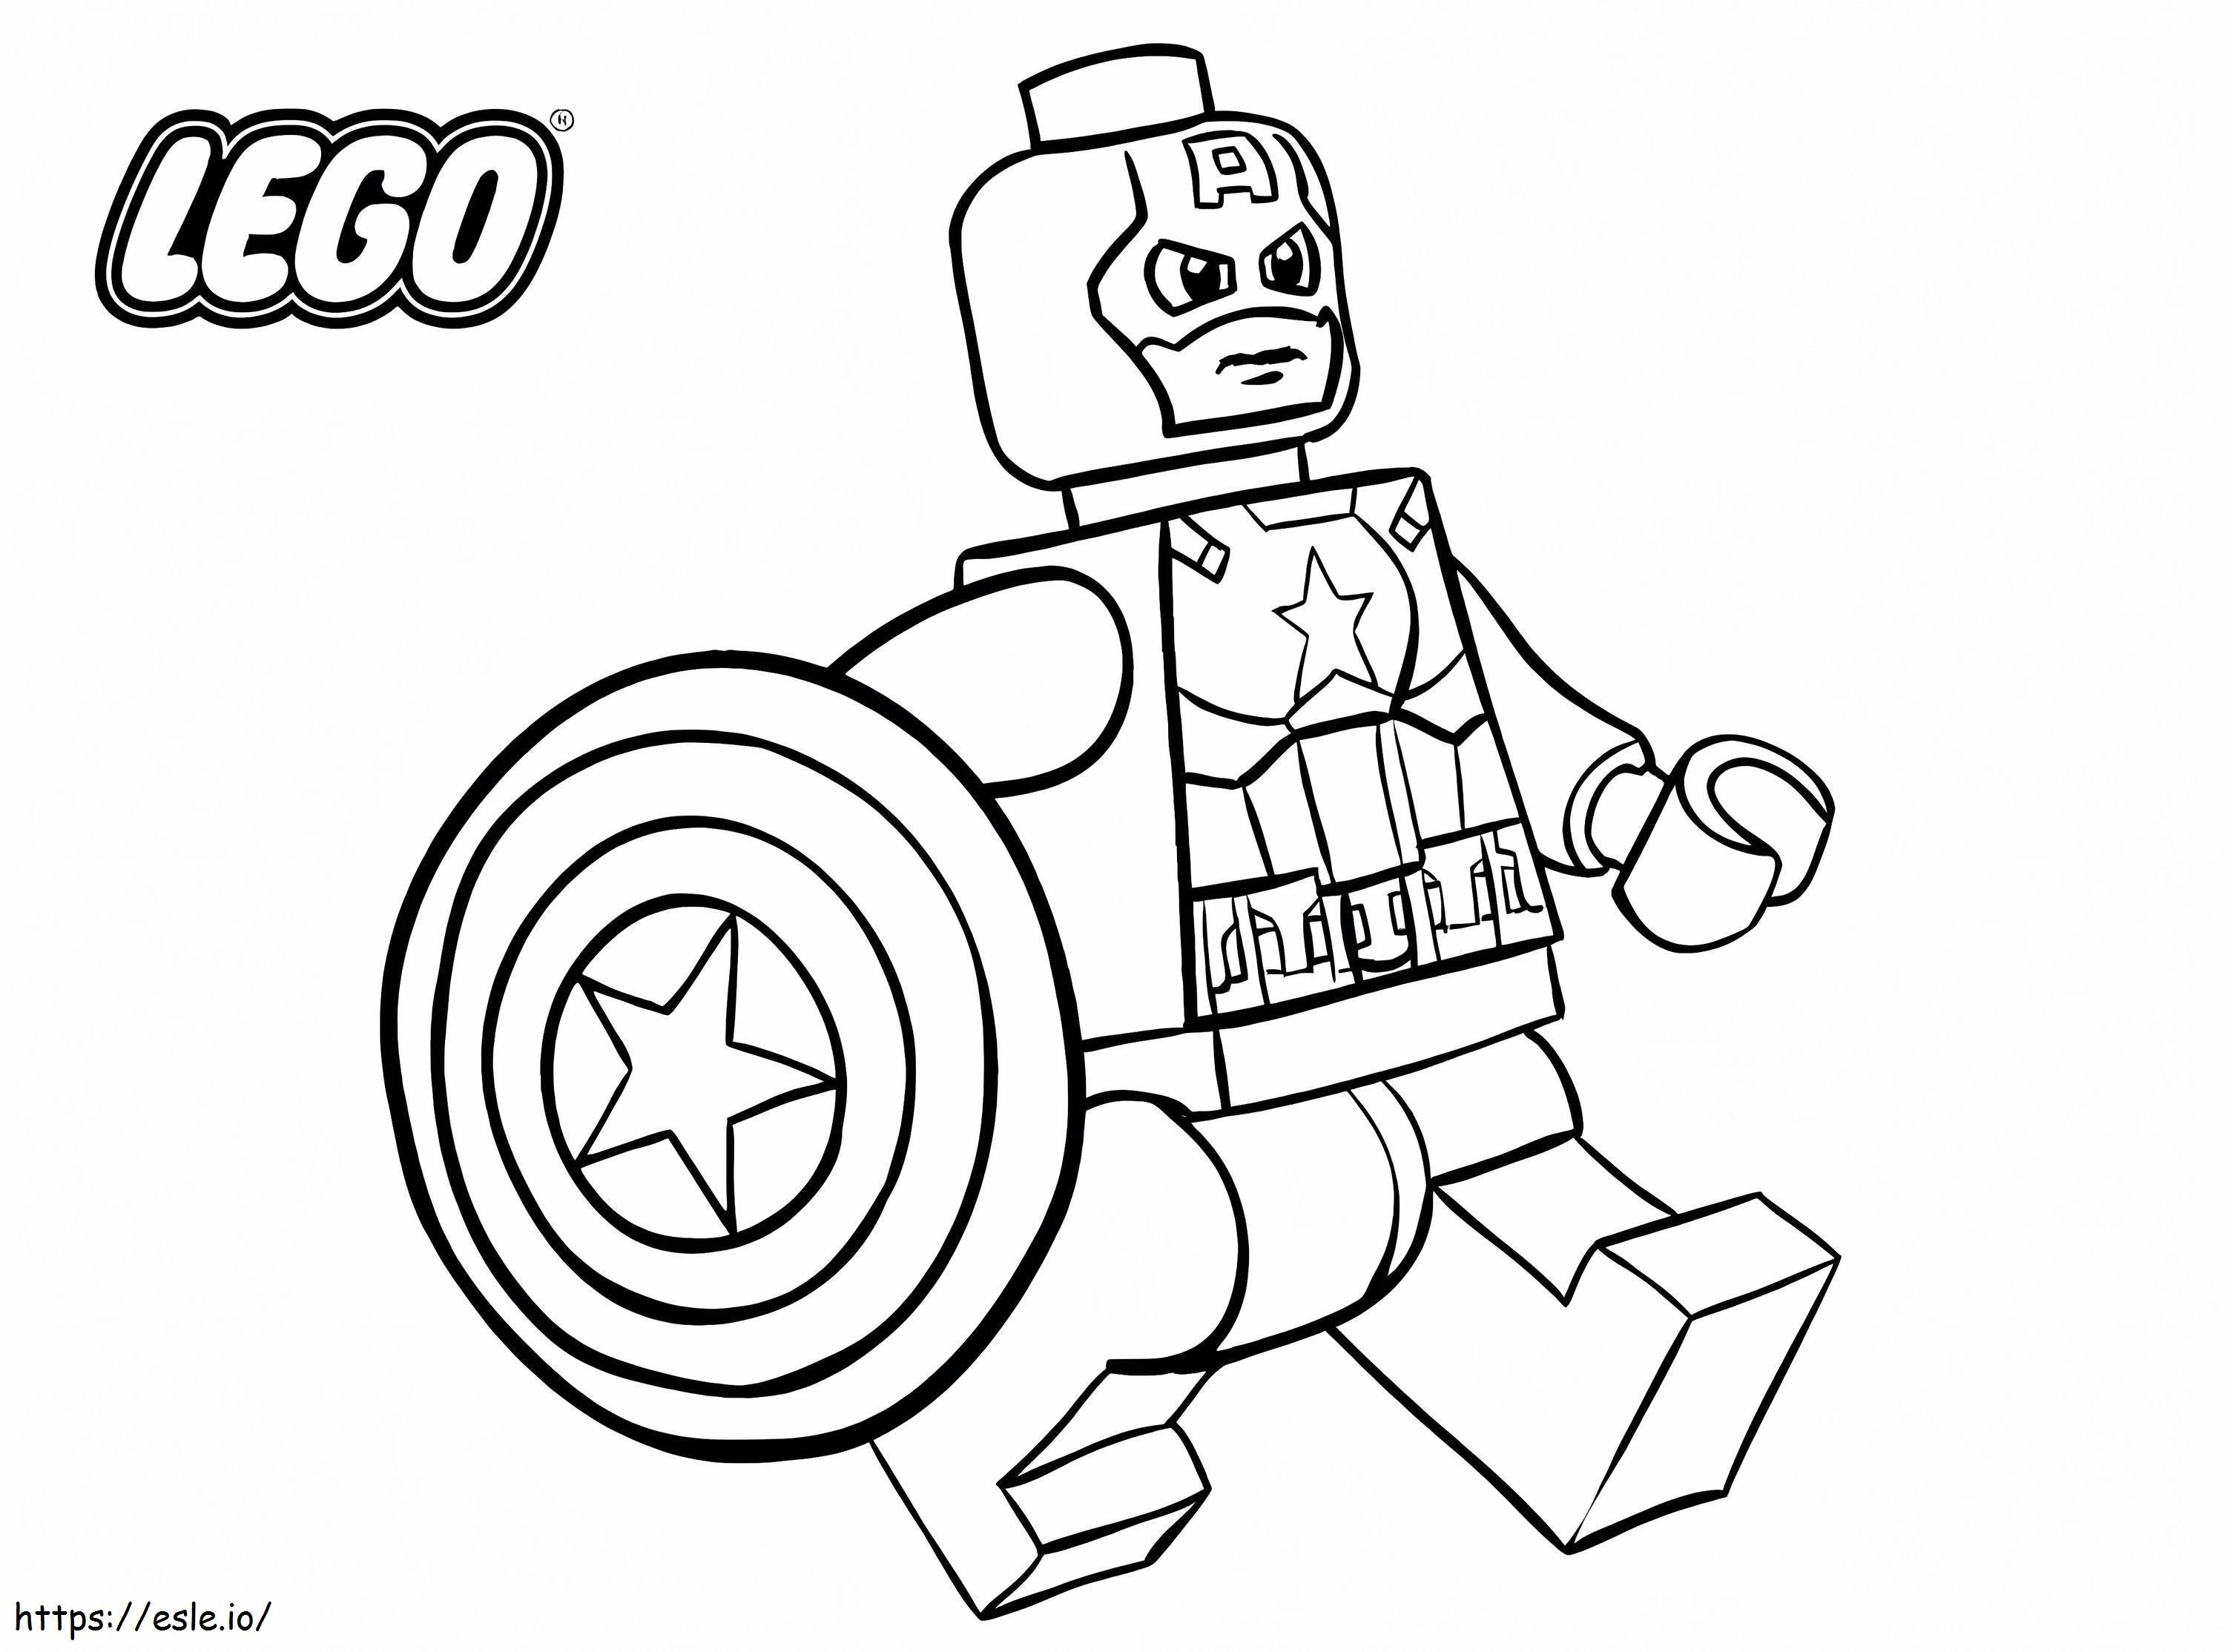 Lego Capitan America in corsa da colorare